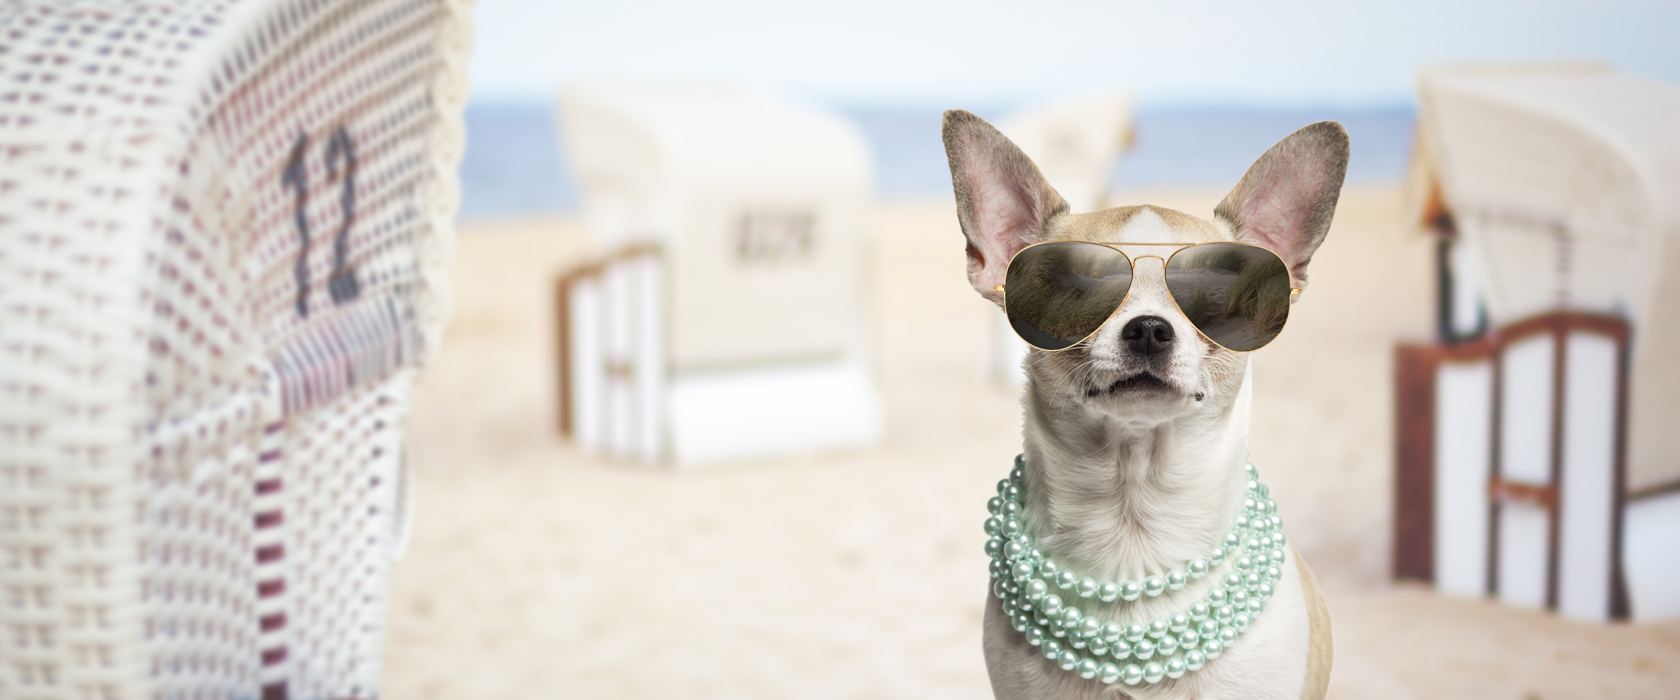 Chihuahua mit Sonnenbrille und Perlenkette am Strand mit Strandkörben im Hintergrund